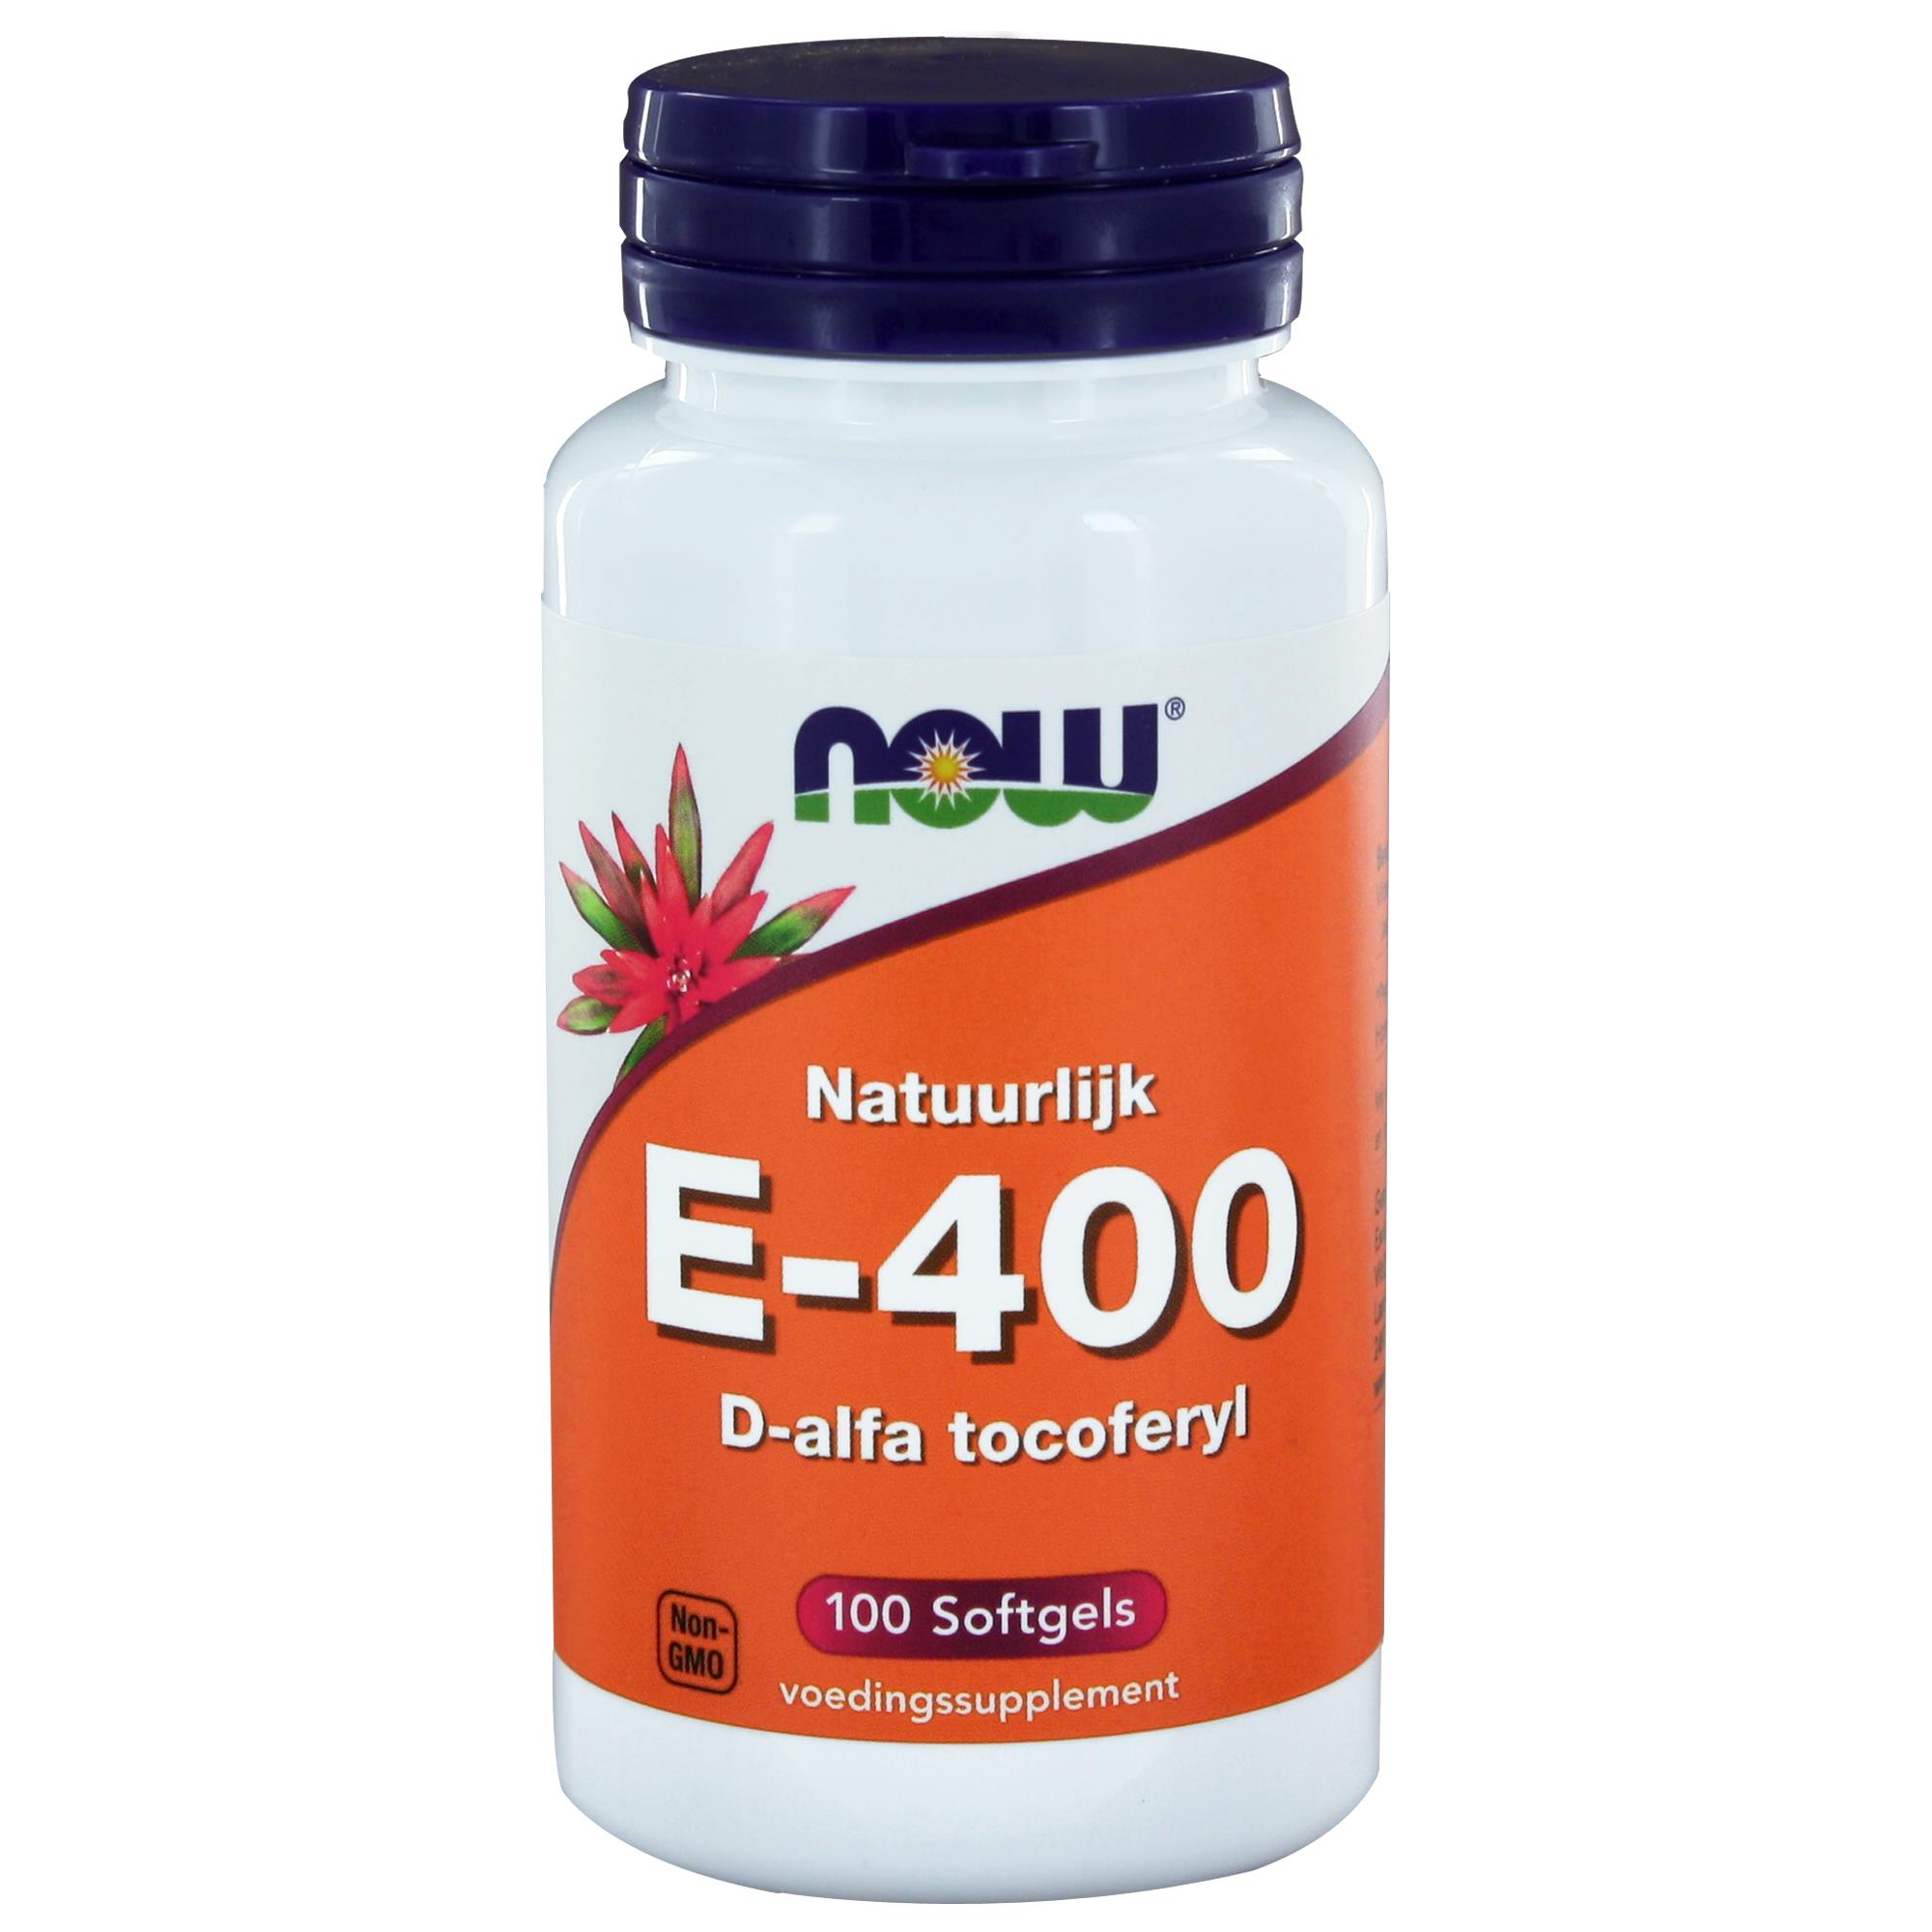 E-400 d-alfa Tocoferyl - 100 softgels